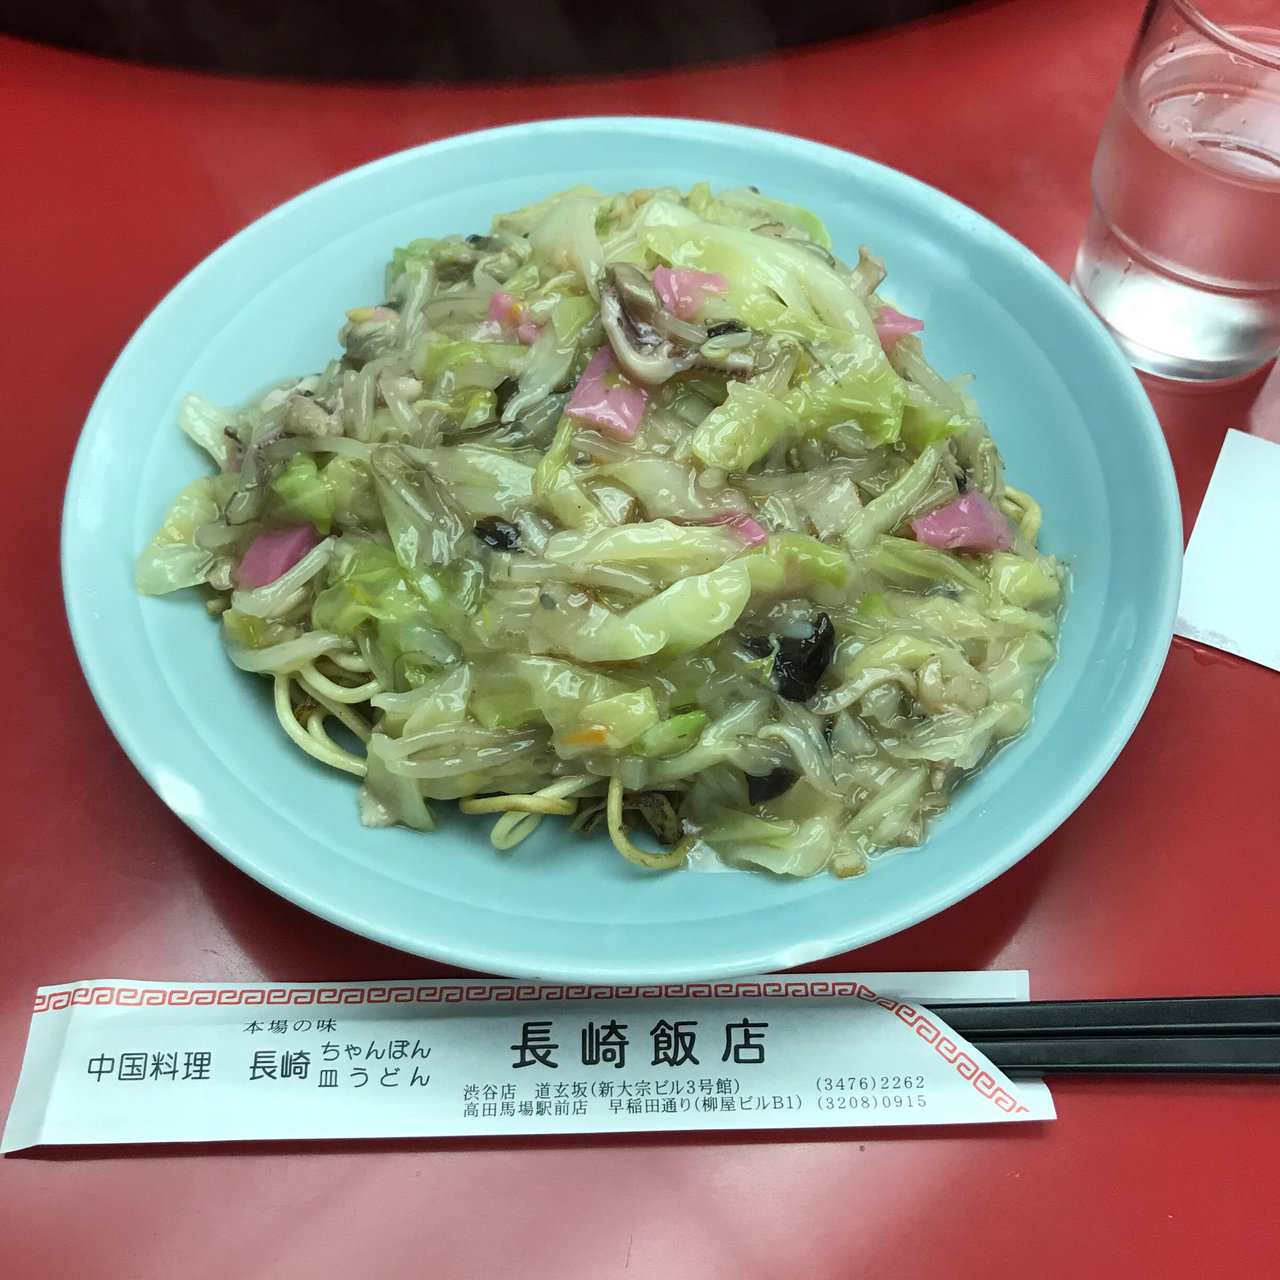 渋谷区で食べられる人気皿うどんランキング Sarah サラ